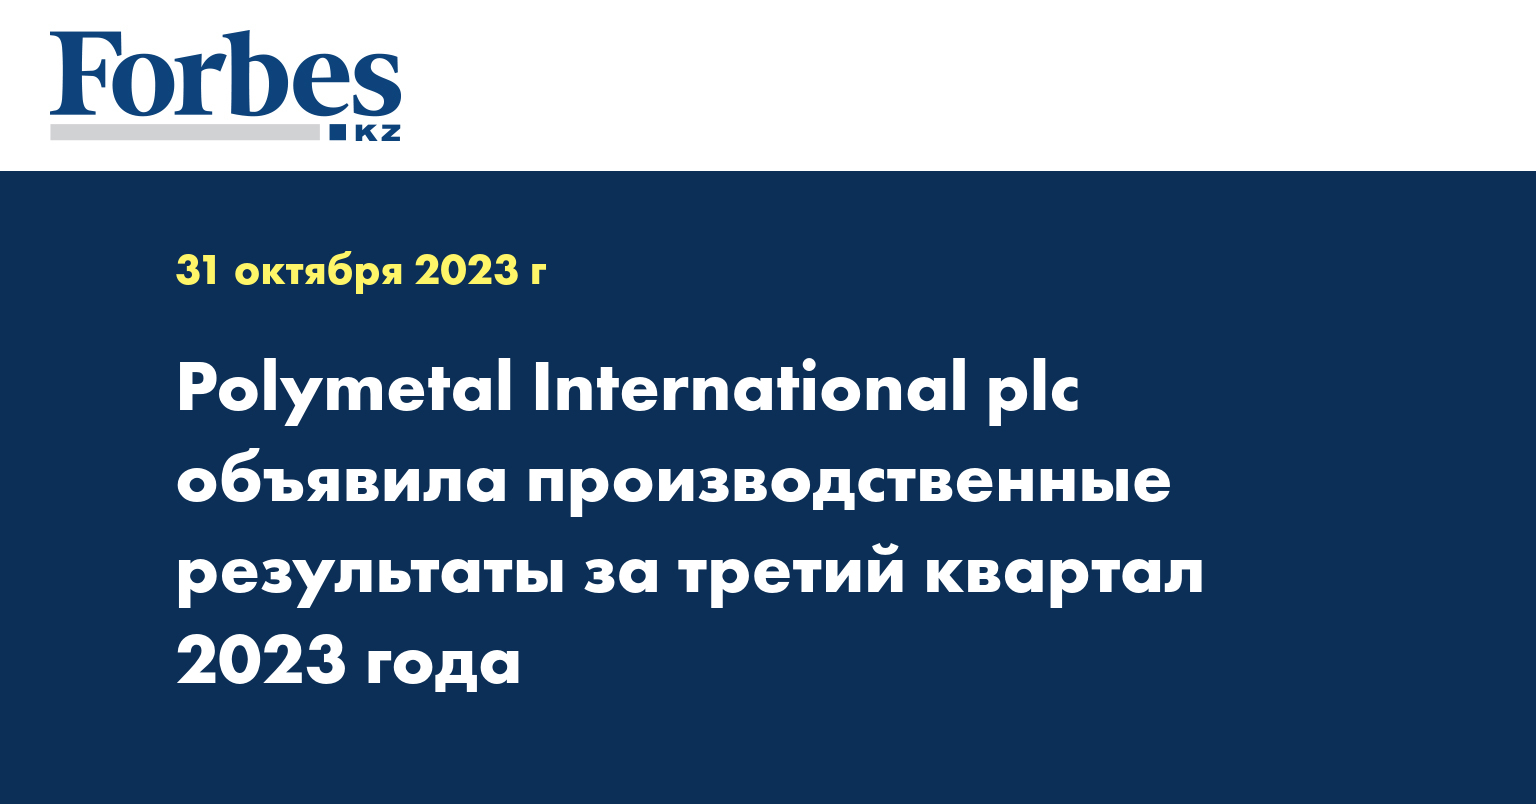 Polymetal International plc объявила производственные результаты за третий квартал 2023 года